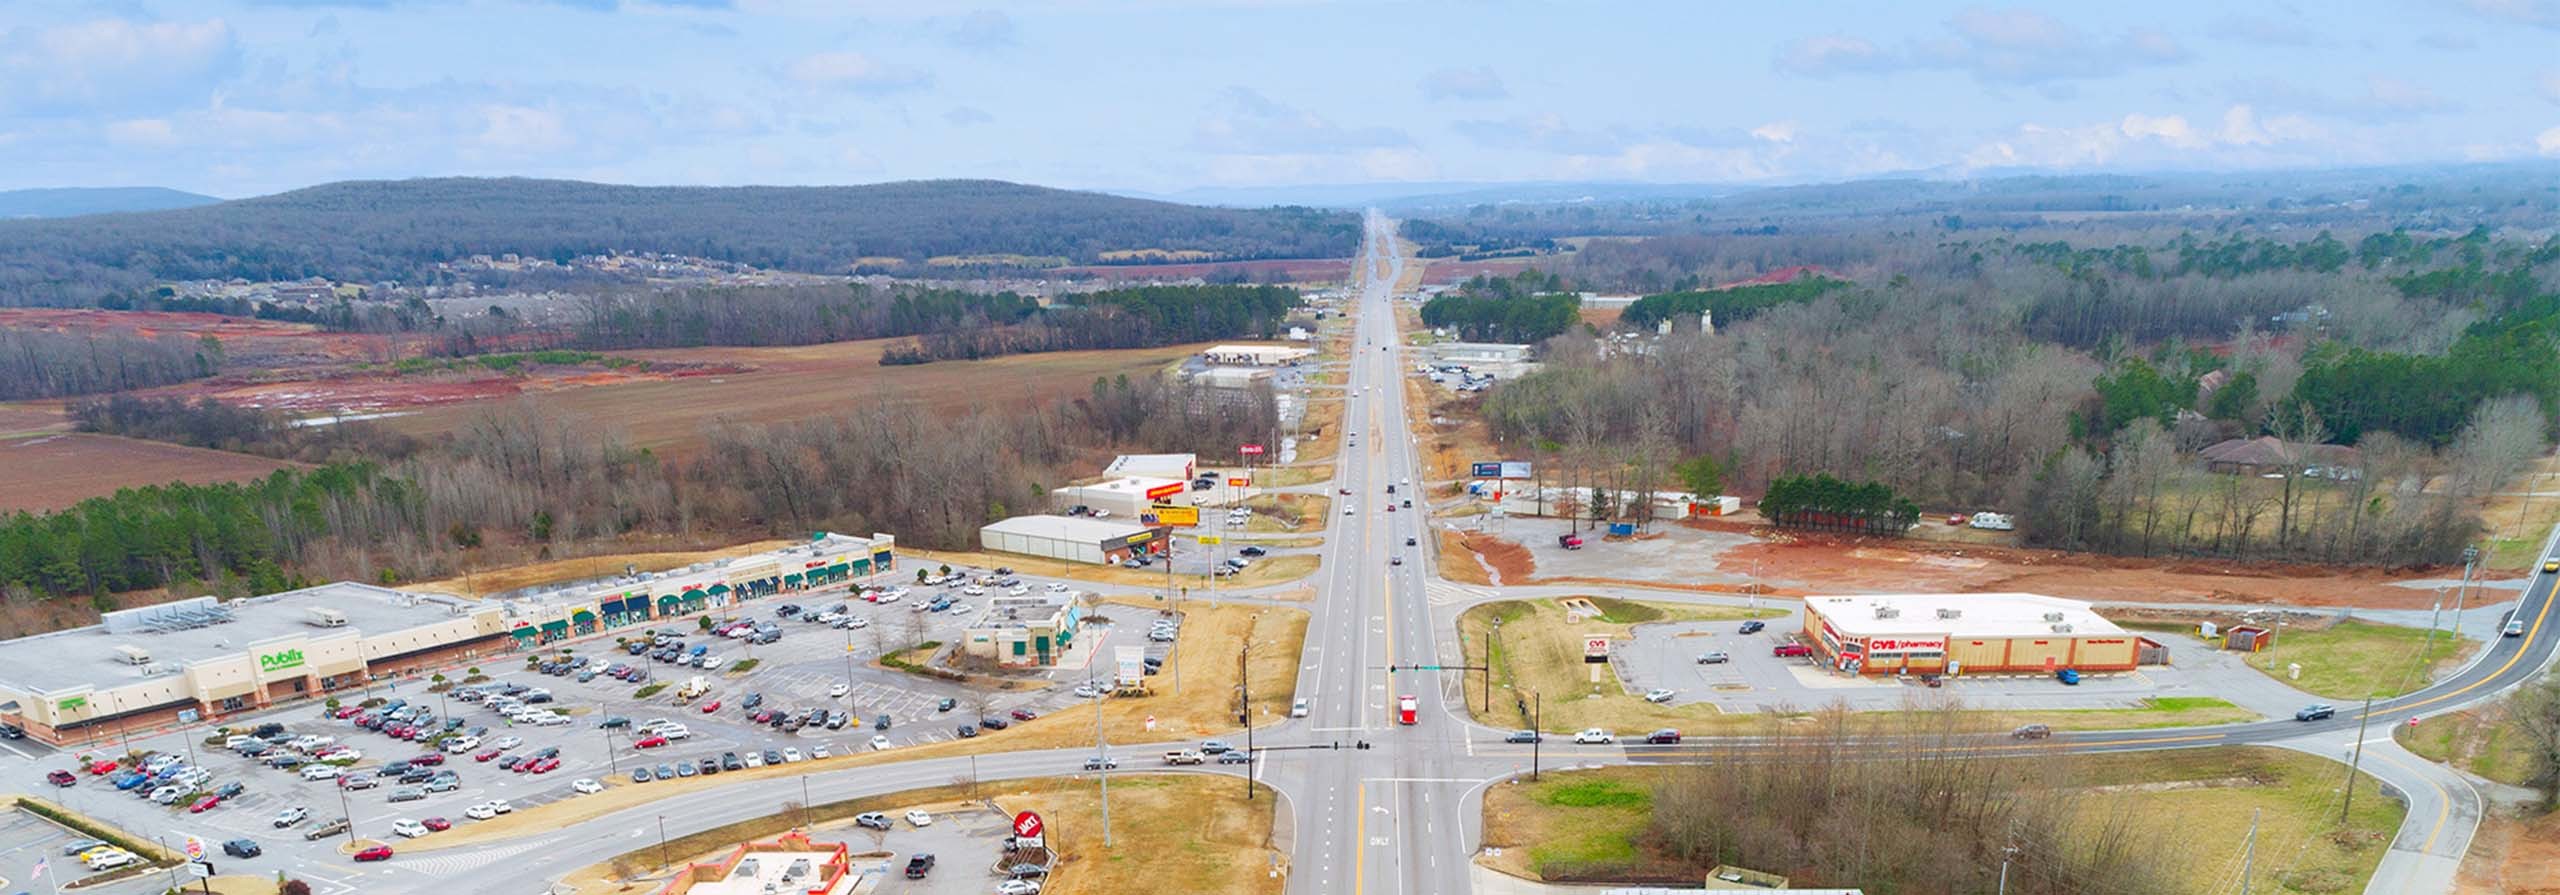 An aerial view of a road that runs through Harvest, Alabama